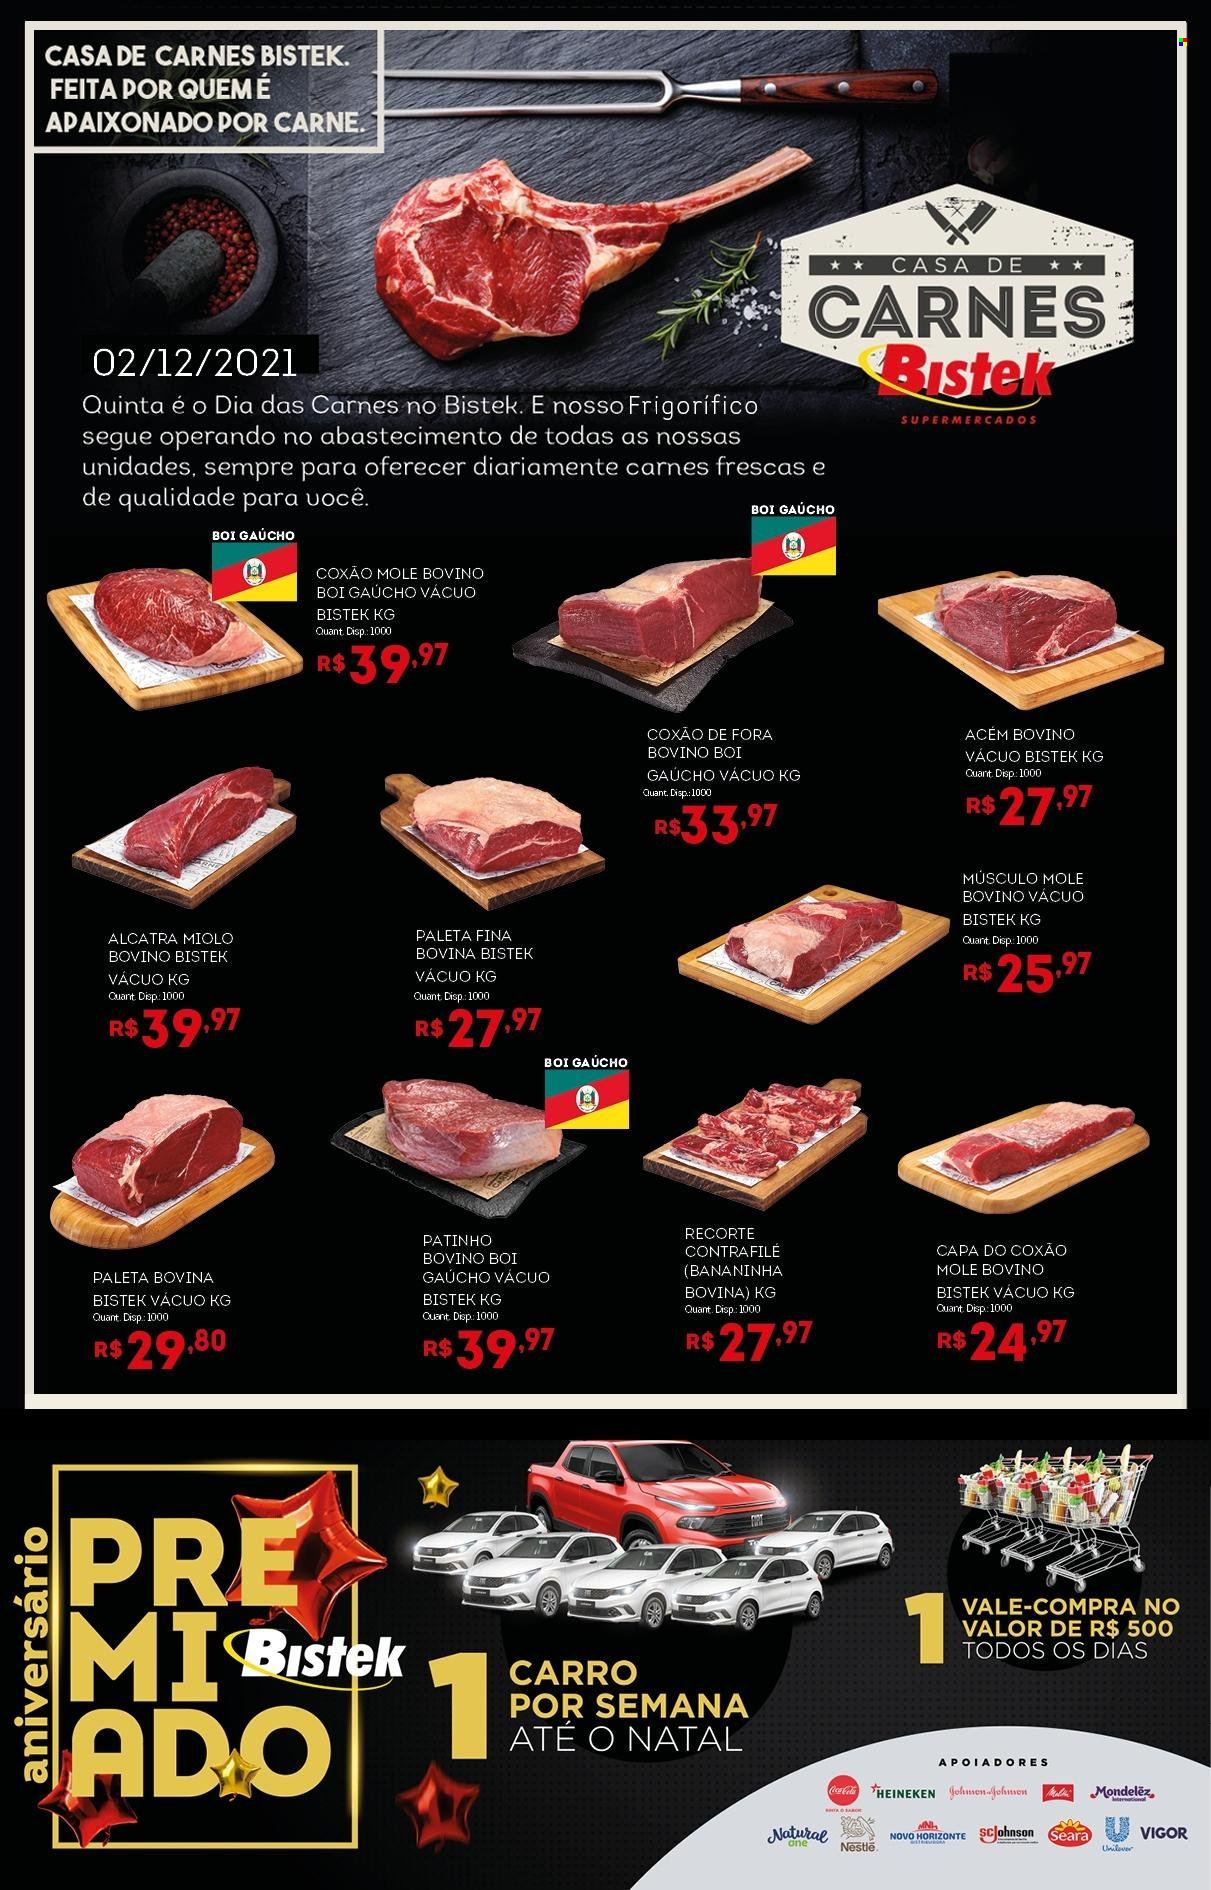 thumbnail - Folheto Bistek Supermercados - 02/12/2021 - 02/12/2021 - Produtos em promoção - Heineken, carne, contra filé, alcatra, coxão mole, carne bovina, Vigor, Nestlé. Página 1.